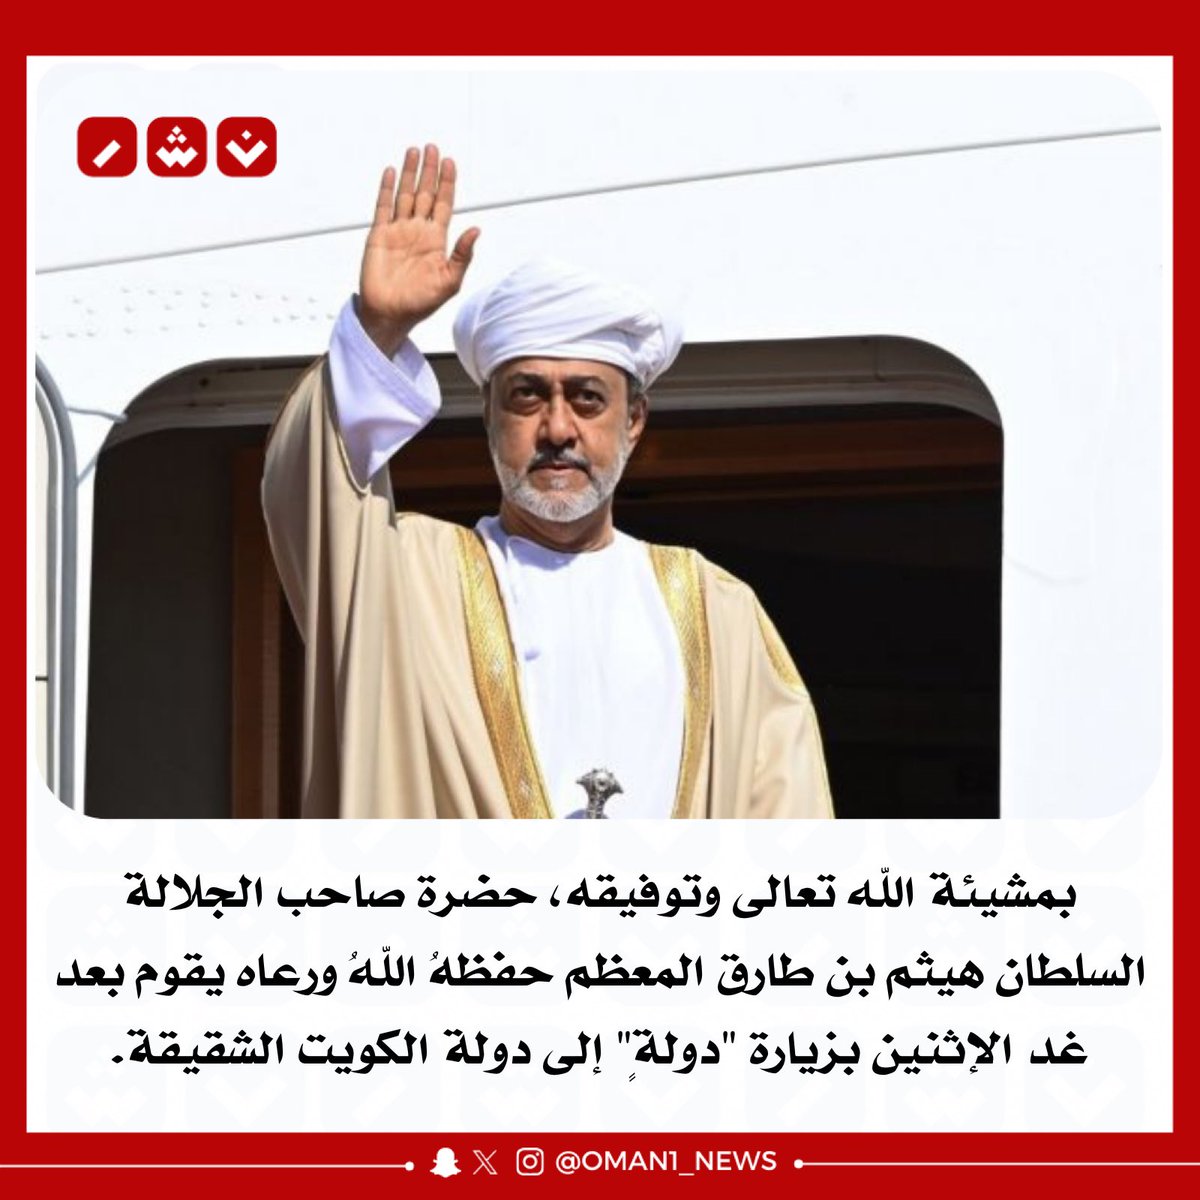 🔴 جلالة السلطان هيثم بن طارق المعظم حفظهُ اللهُ ورعاه يقوم بعد غد الإثنين بزيارة 'دولةٍ' إلى دولة الكويت الشقيقة.